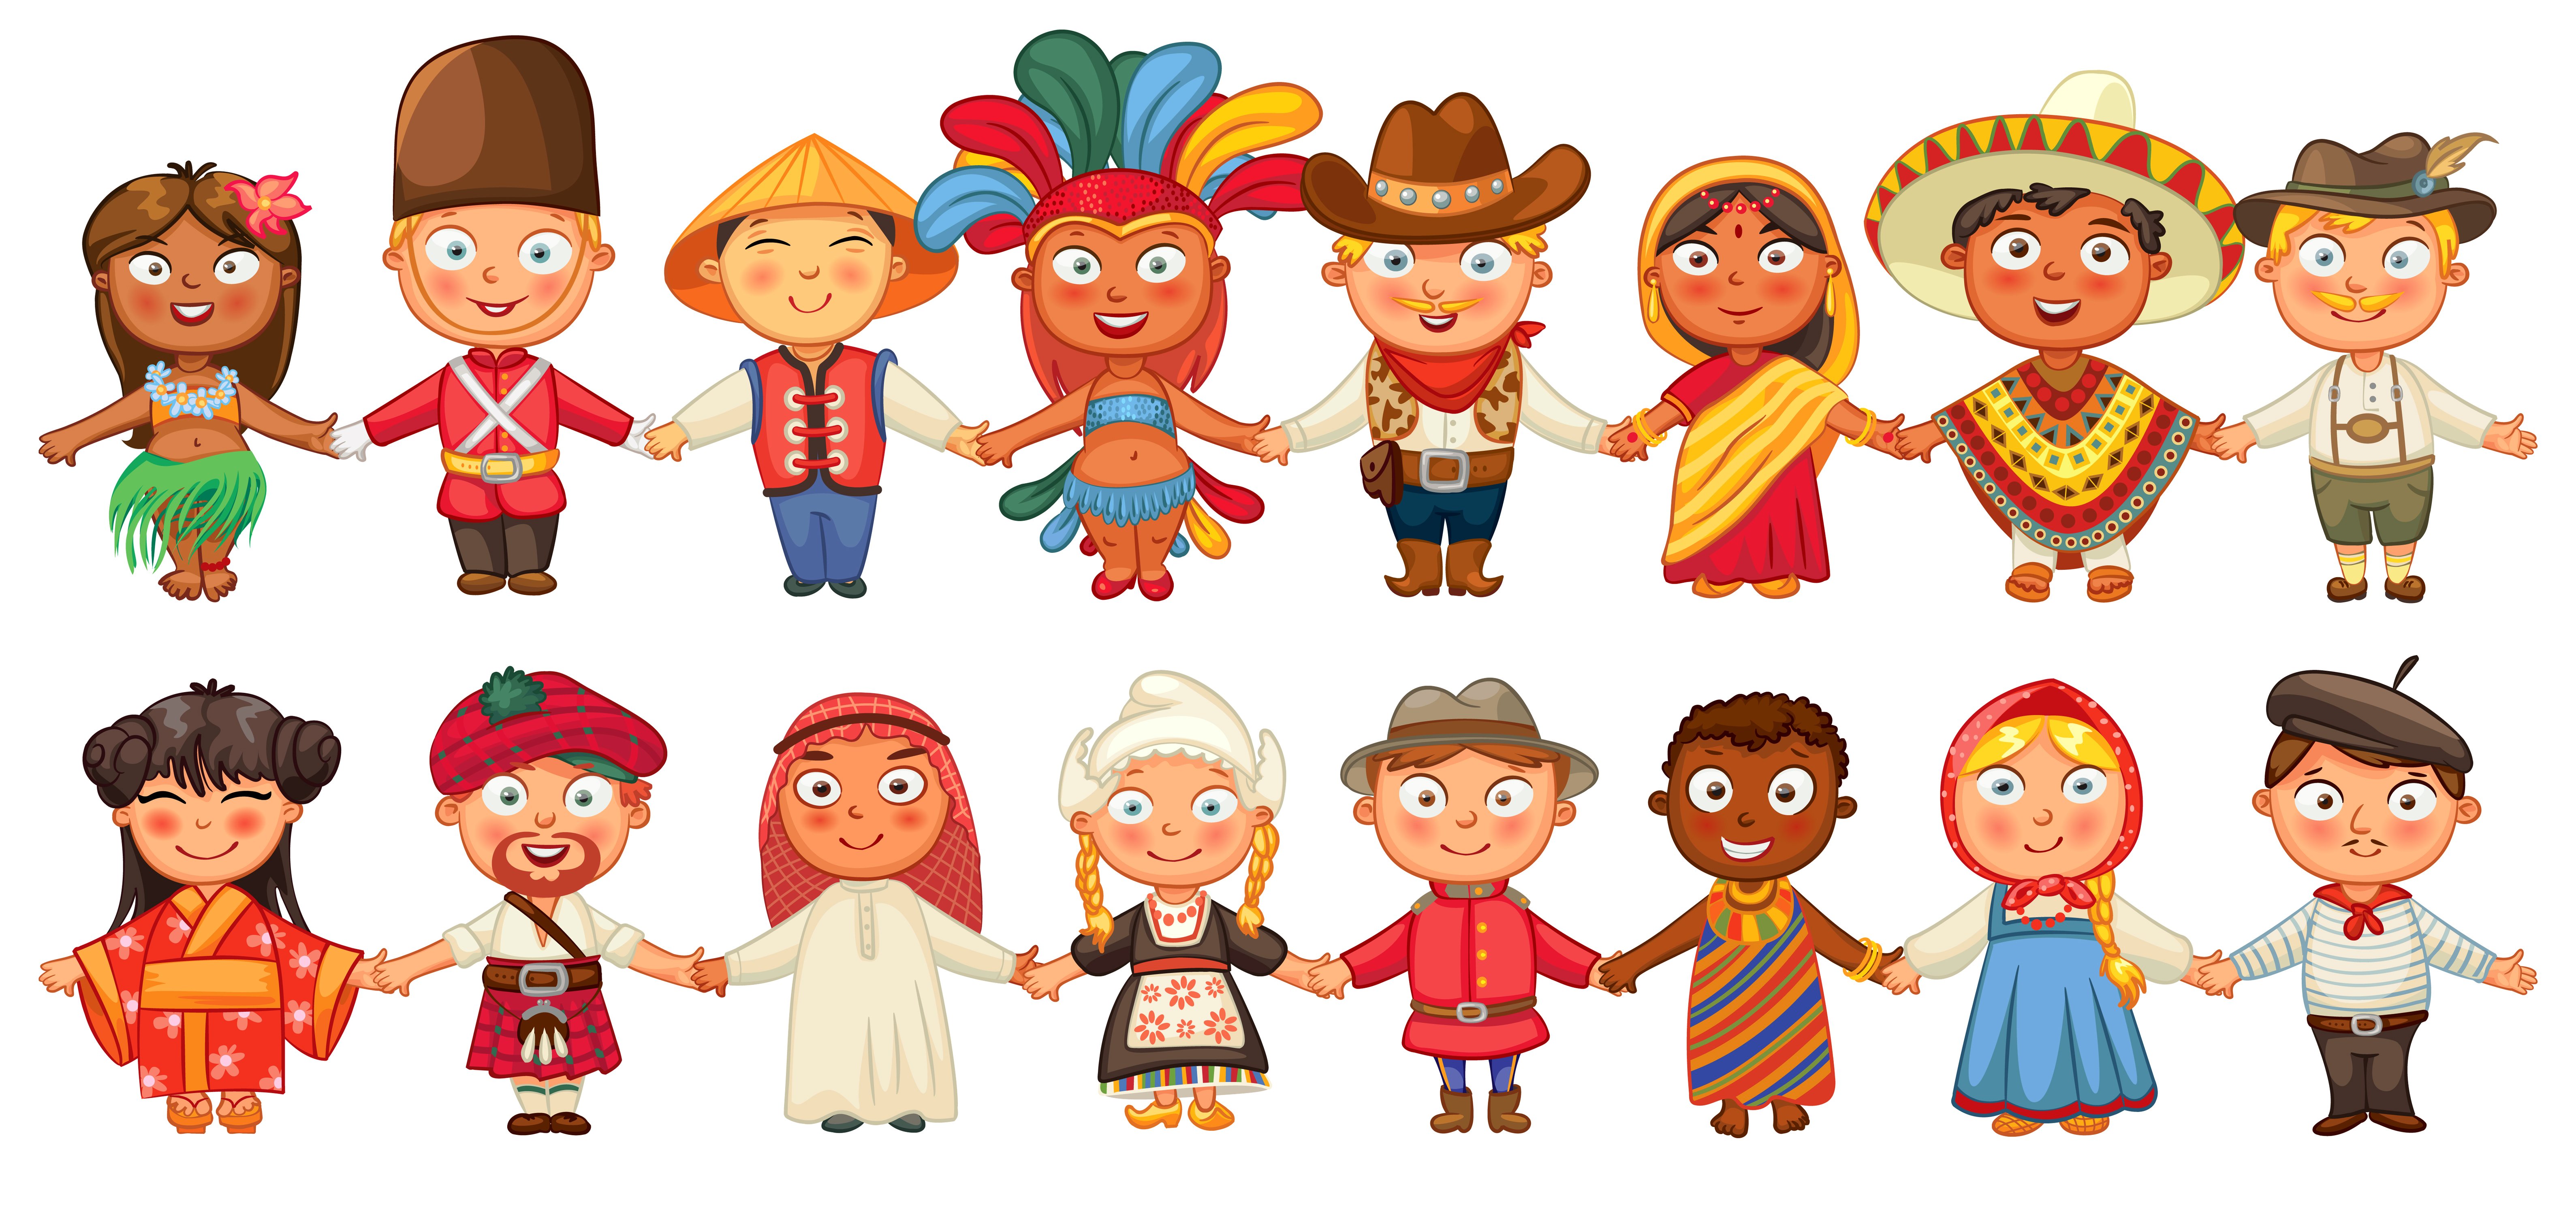 Cultures around. Национальности для детей. Человечки разных народов. Дети разных народов. Народы разных национальностей.